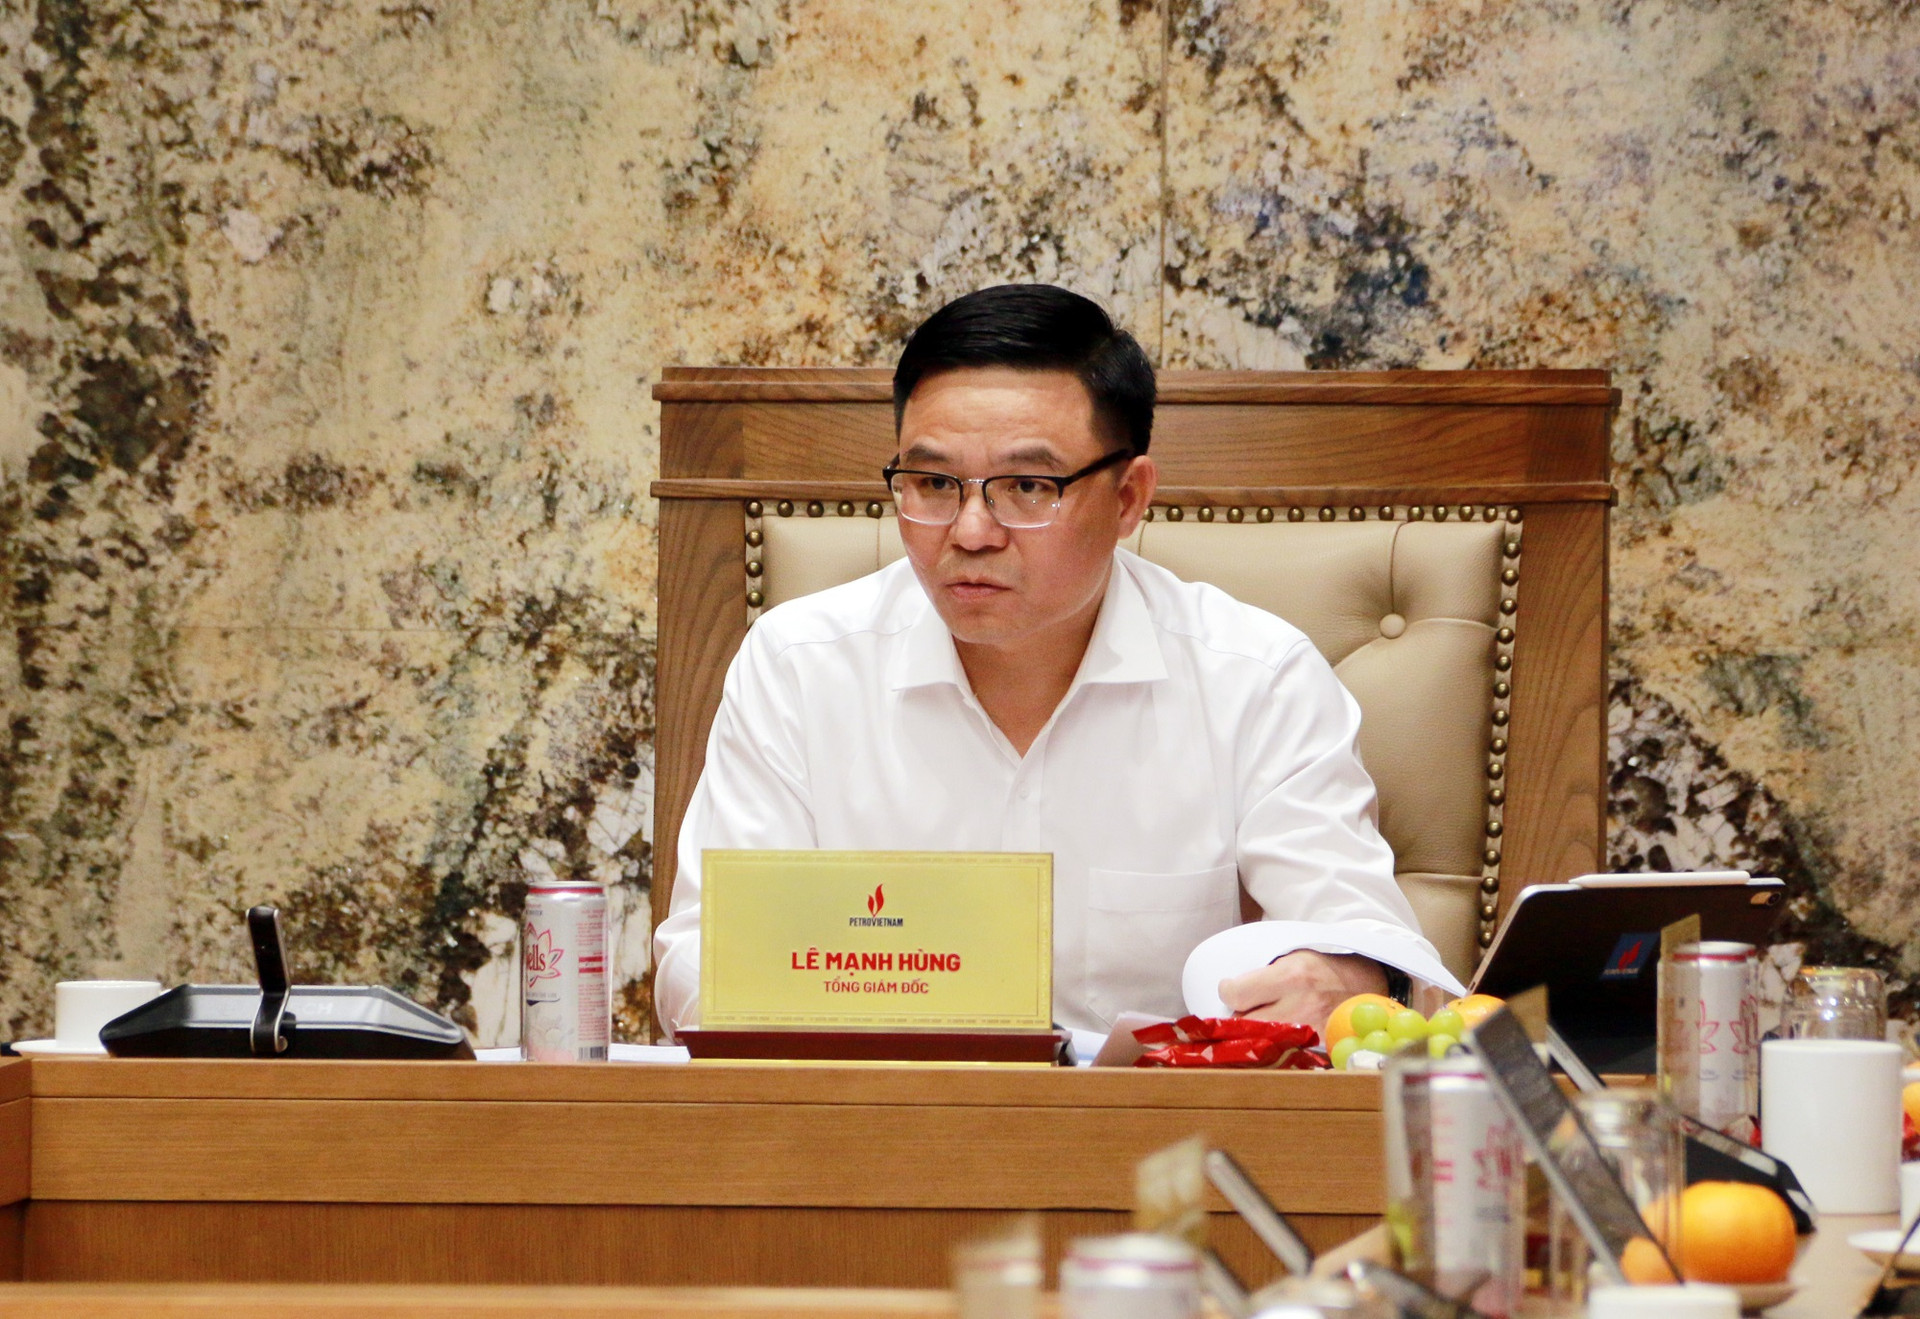 Tổng Giám đốc Petrovietnam Lê Mạnh Hùng chủ trì, kết luận hội nghị.